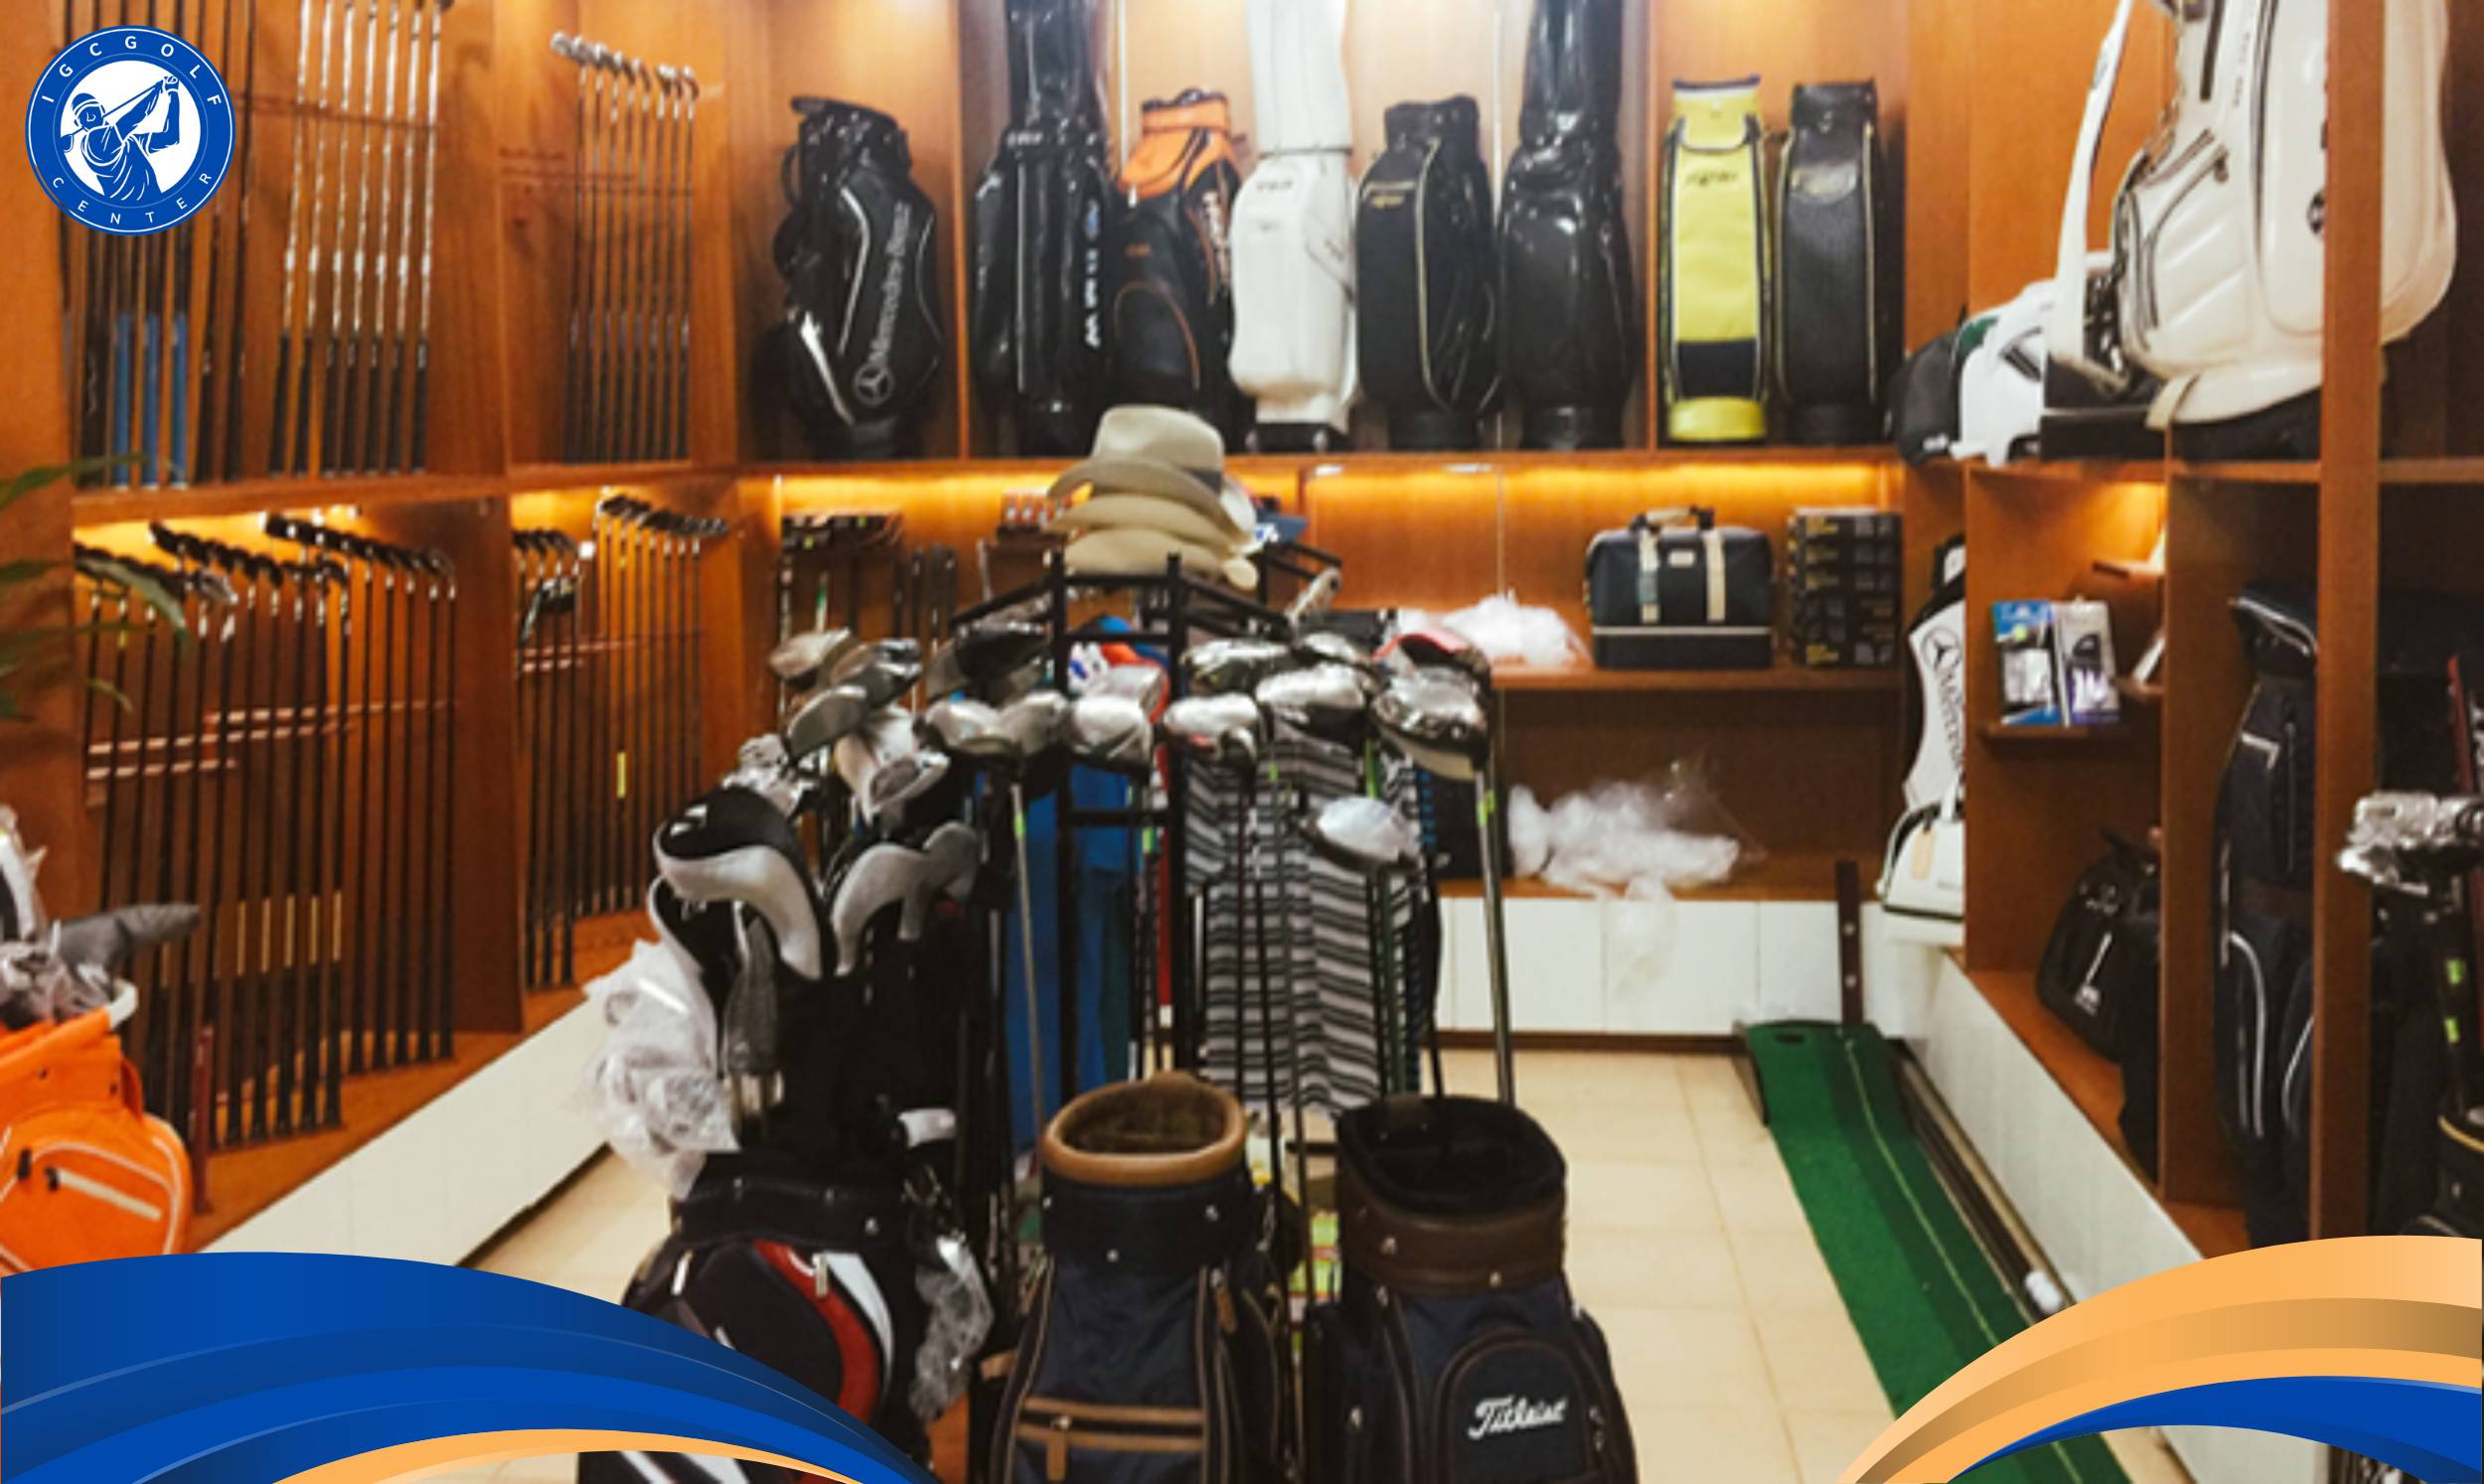 Có phòng thuê dụng cụ Golf và phòng thay đồ riêng